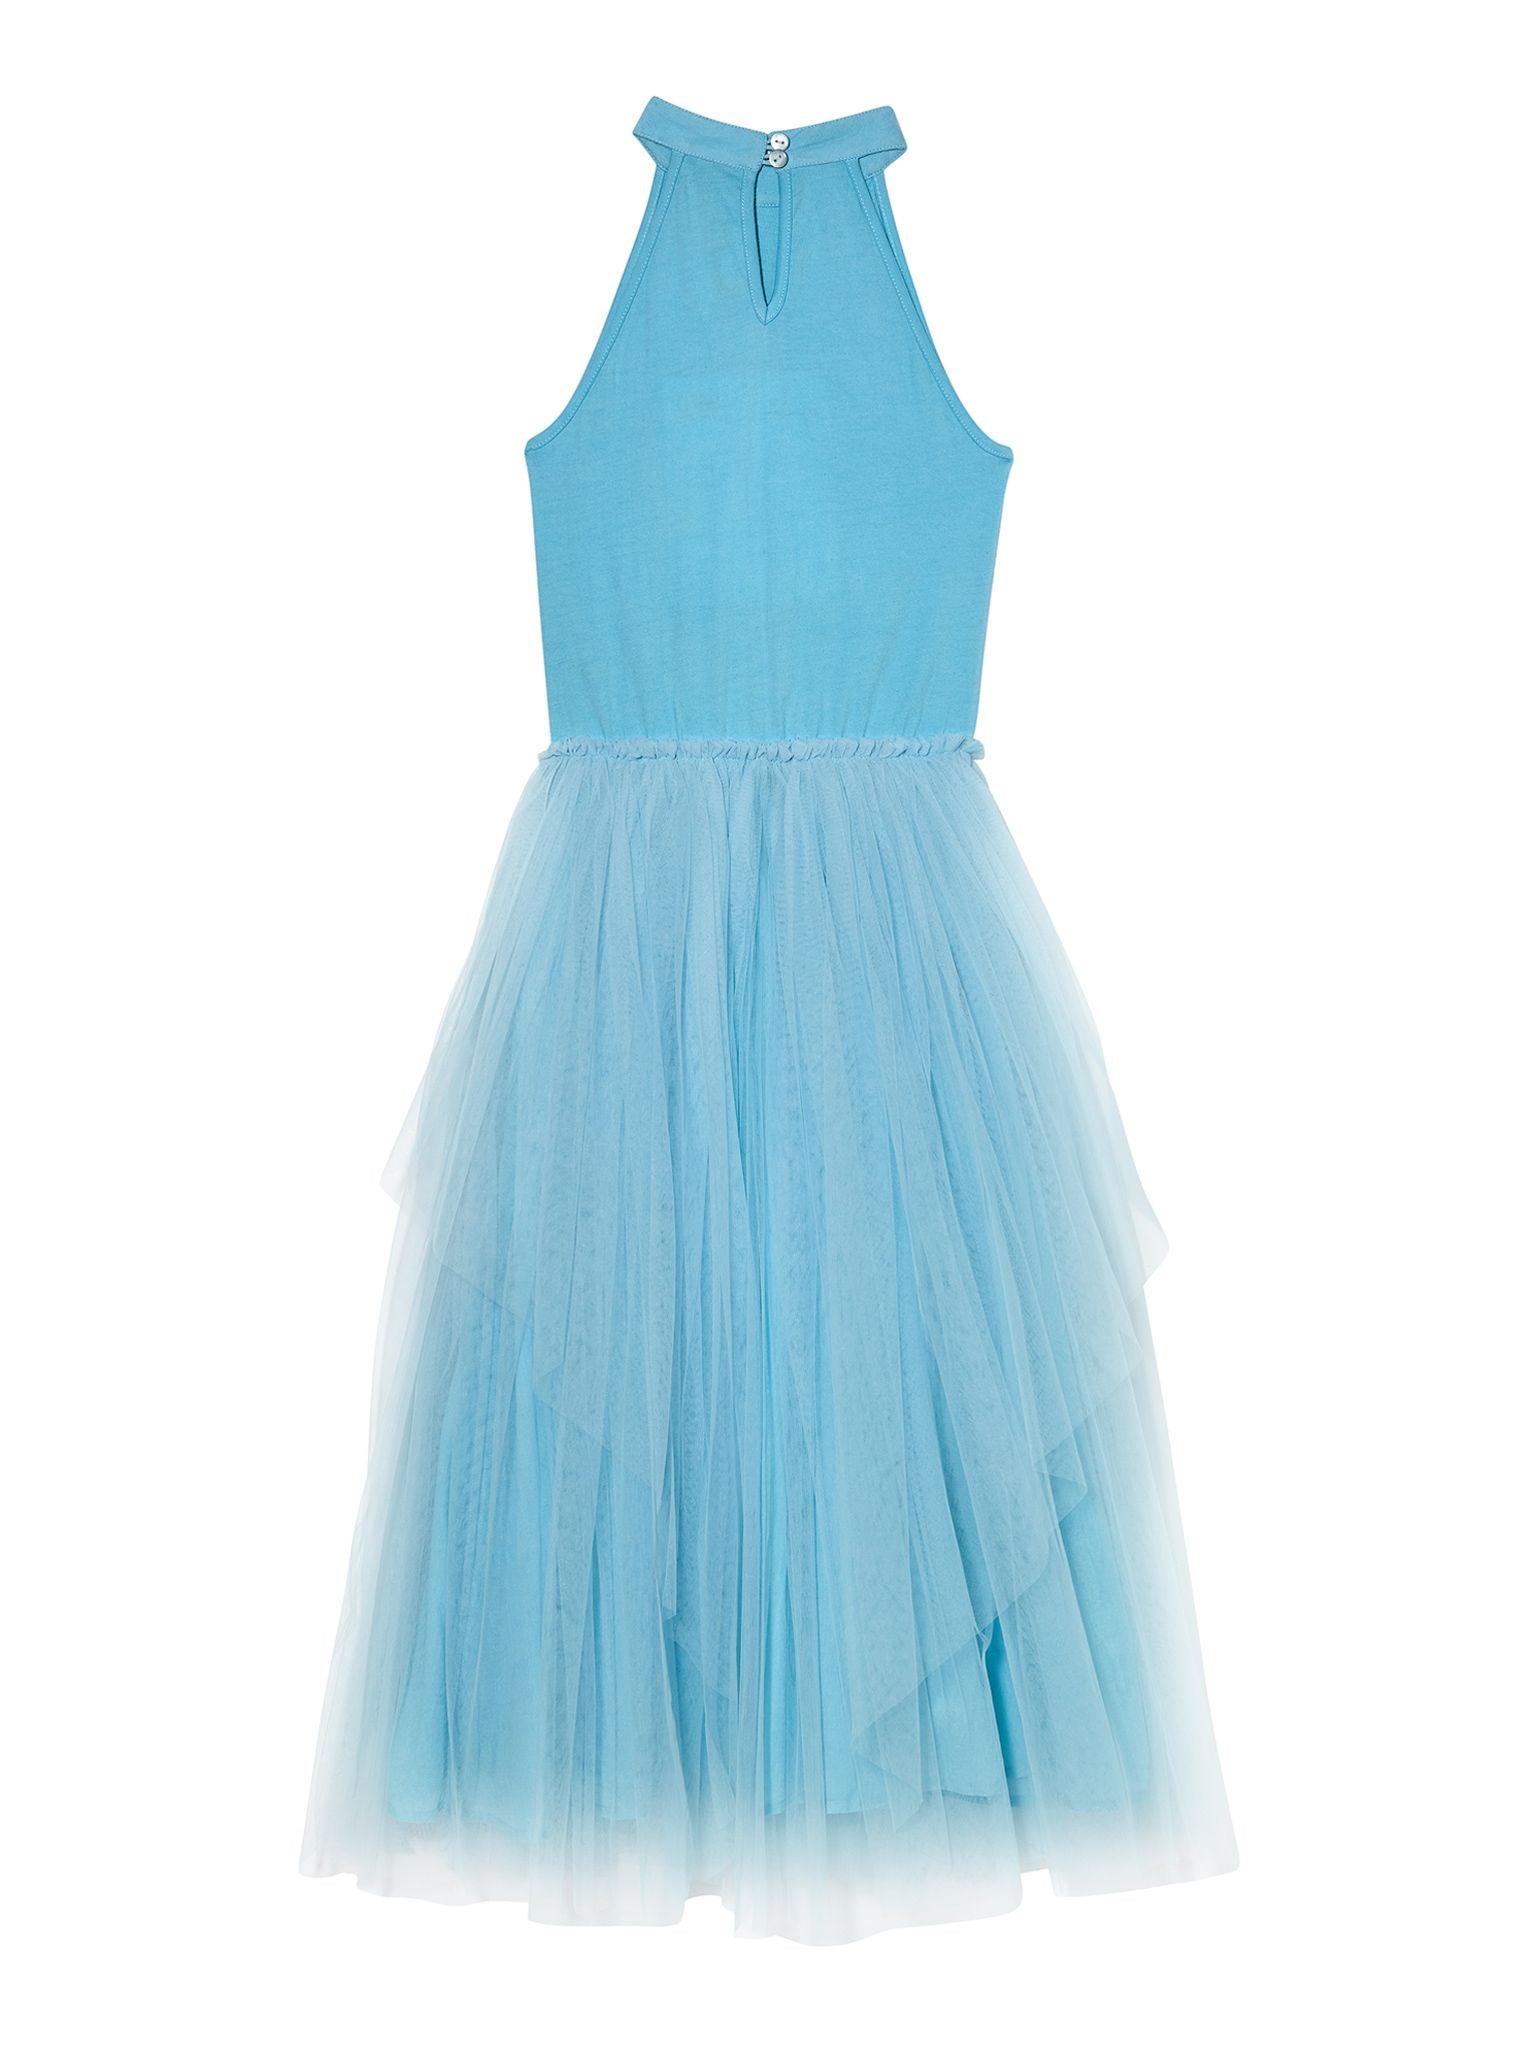 Tutu Du Monde x Disney Frozen Queen Tutu Dress - Frozen Blue